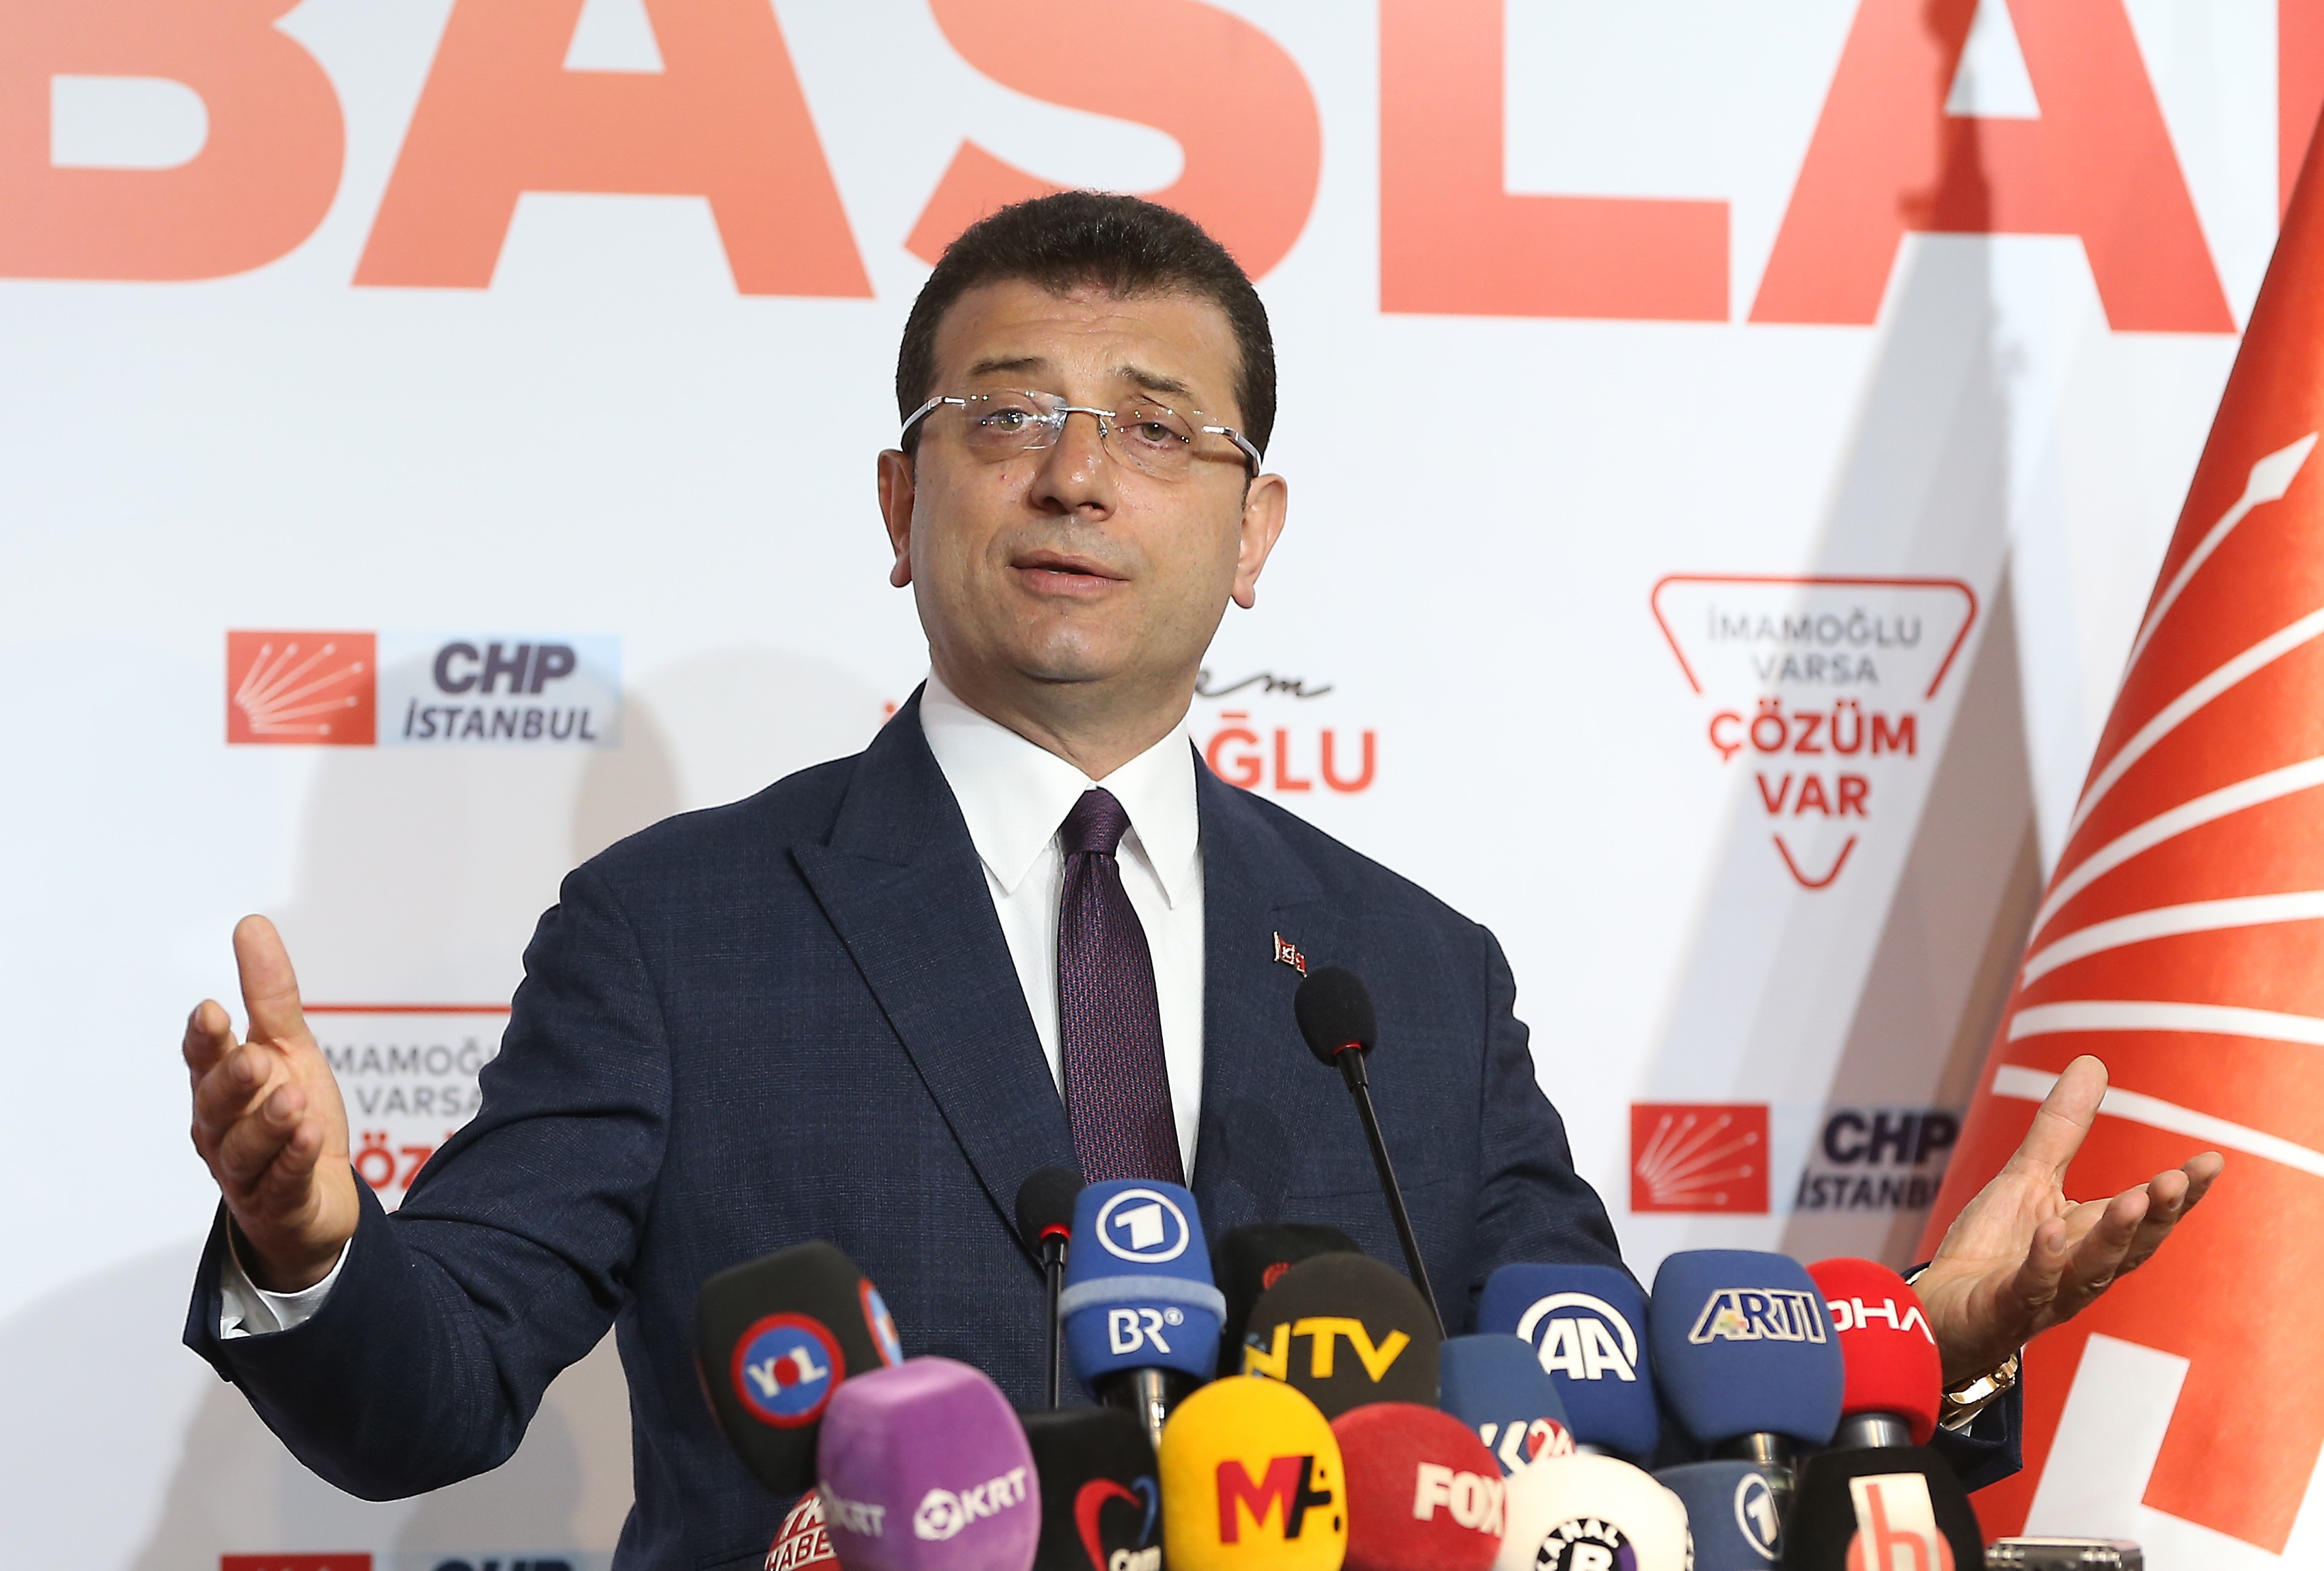 Der Kommunalpolitiker Ekrem Imamoglu gewinnt die Oberbürgermeisterwahl in Istanbul.